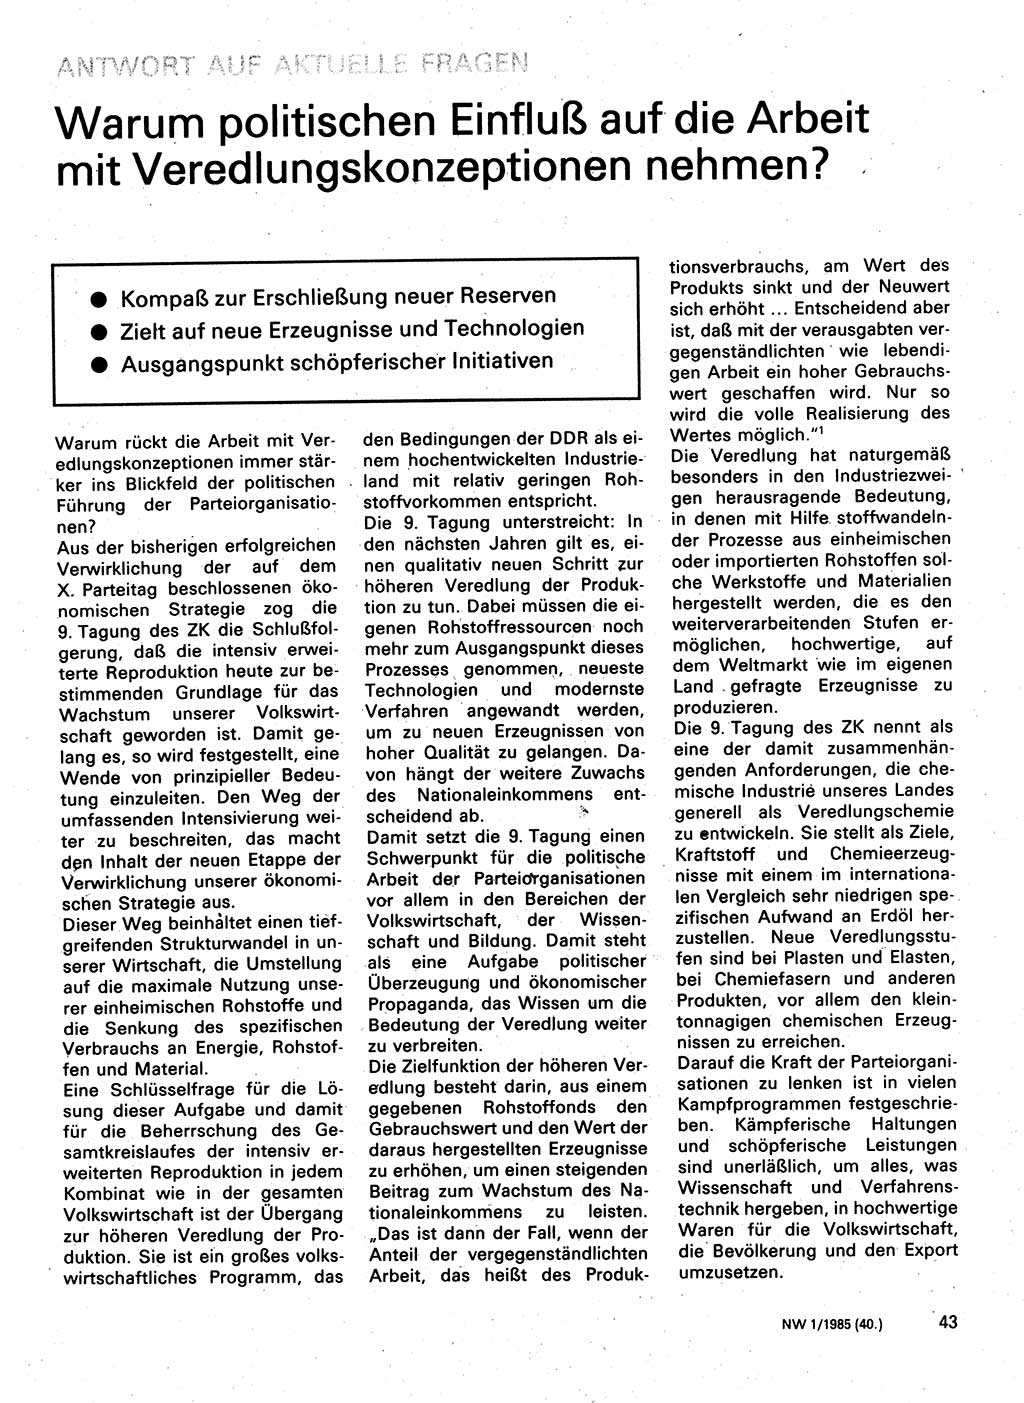 Neuer Weg (NW), Organ des Zentralkomitees (ZK) der SED (Sozialistische Einheitspartei Deutschlands) für Fragen des Parteilebens, 40. Jahrgang [Deutsche Demokratische Republik (DDR)] 1985, Seite 43 (NW ZK SED DDR 1985, S. 43)